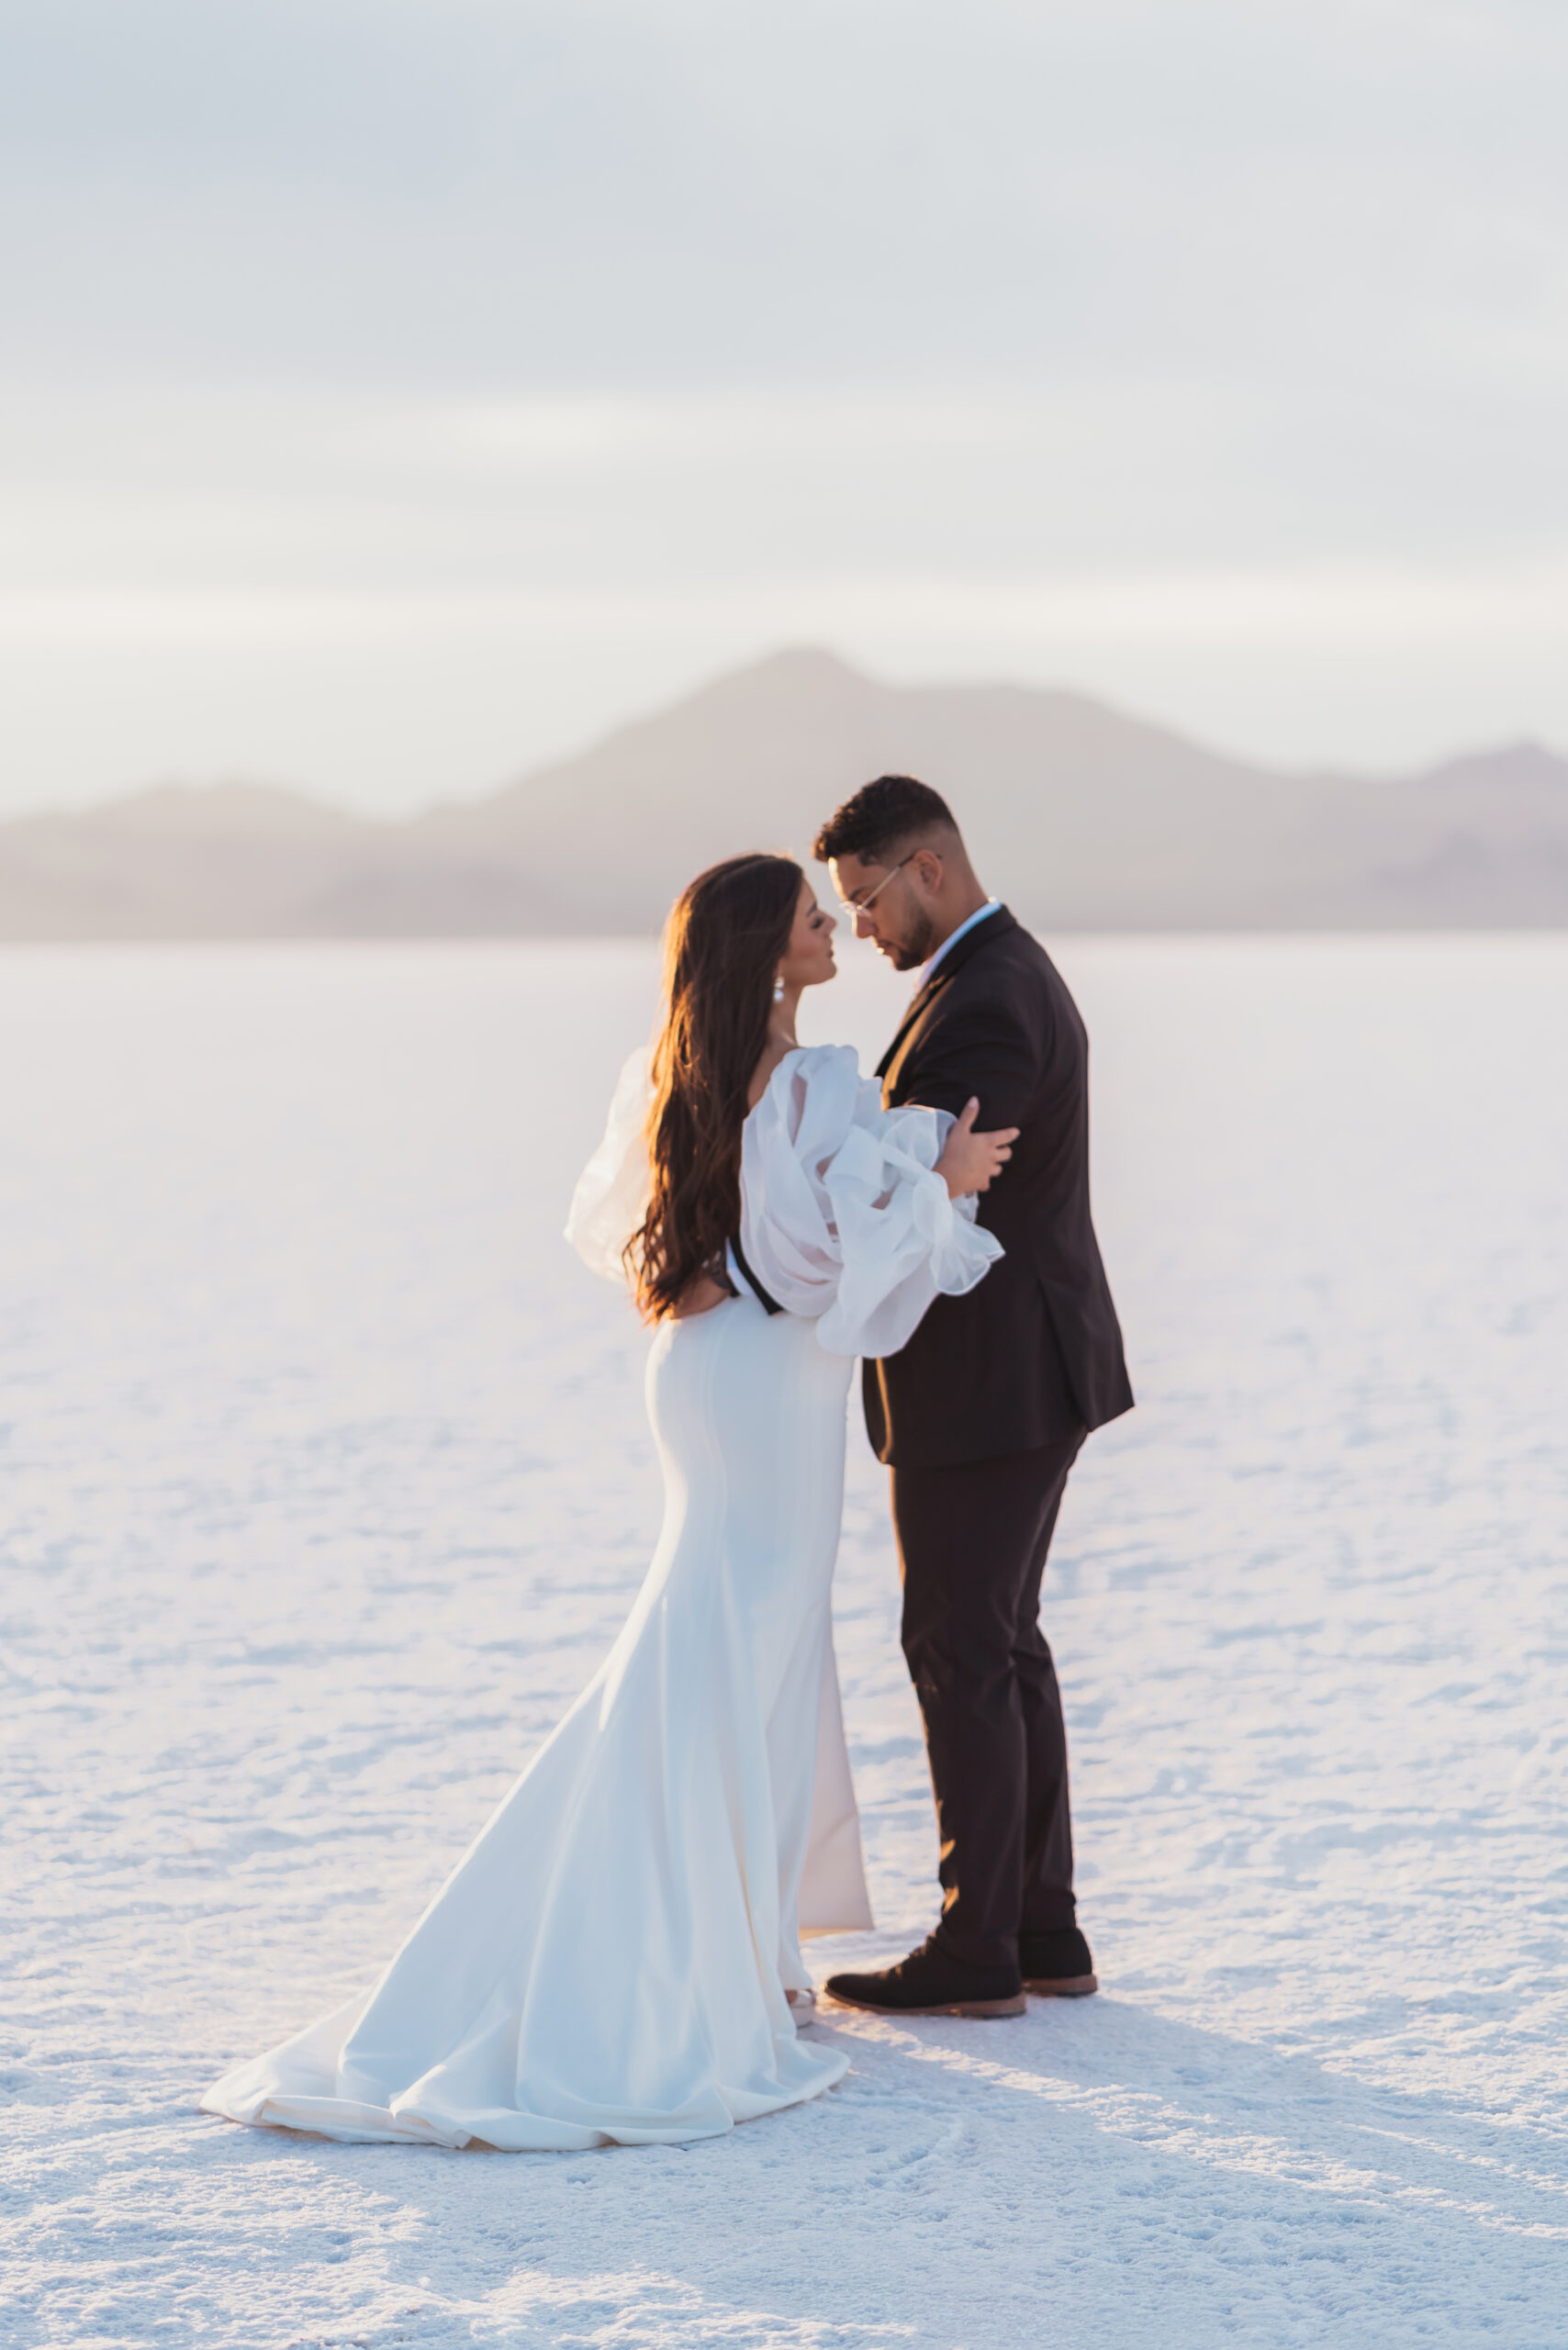 An Elopement Wedding at the Salt Flats in Utah.